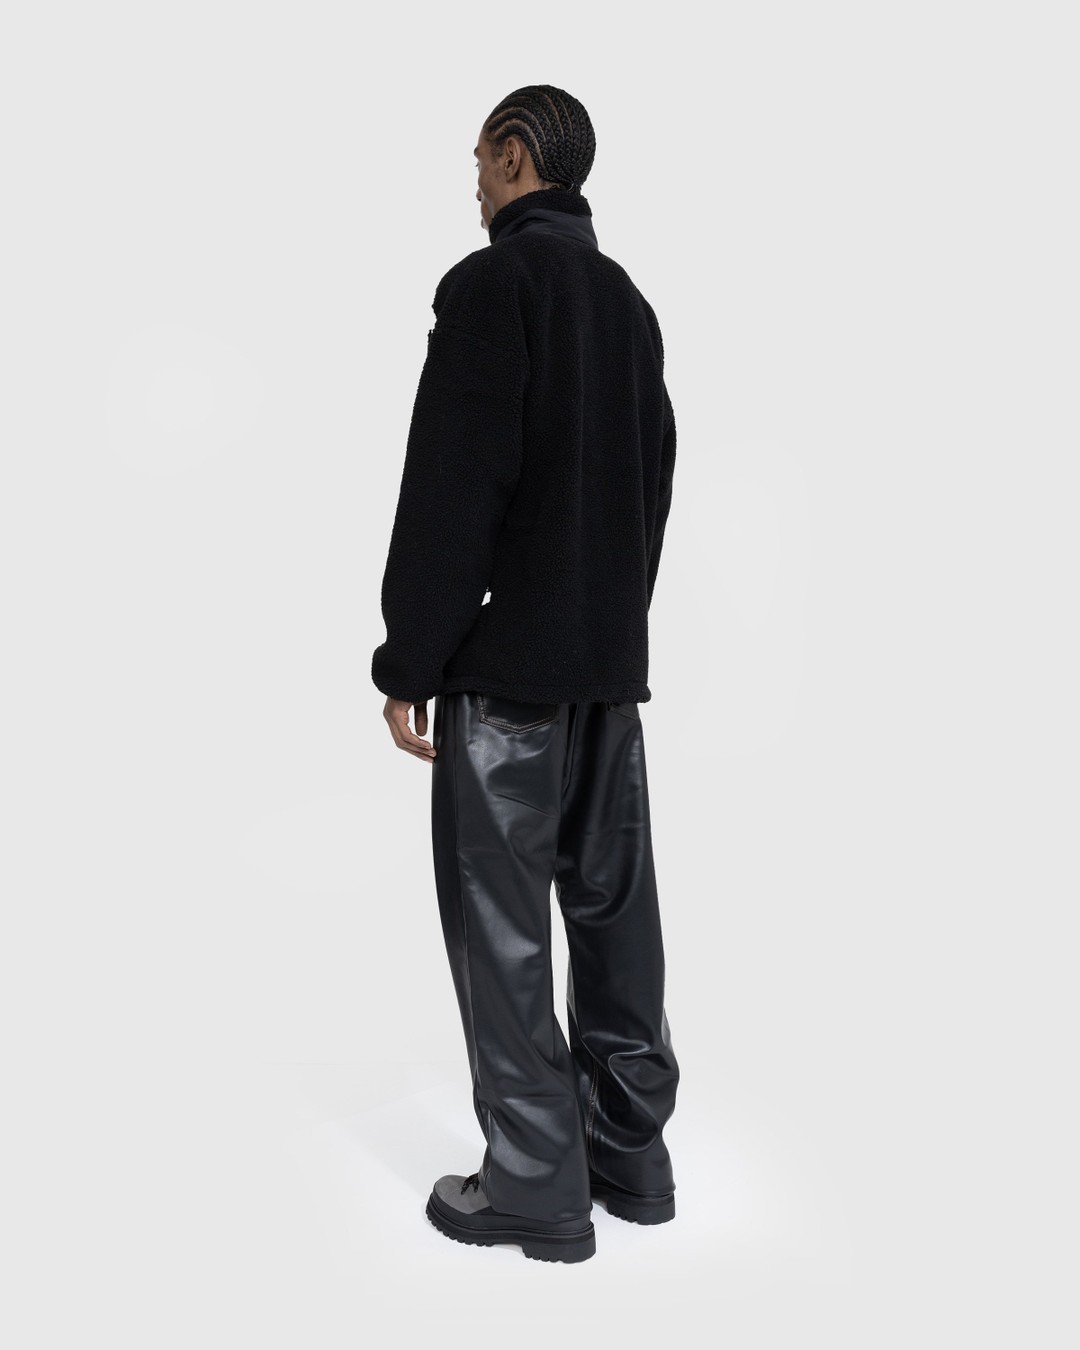 Y/Project – Y Belt Leather Pants Black - Pants - Black - Image 4